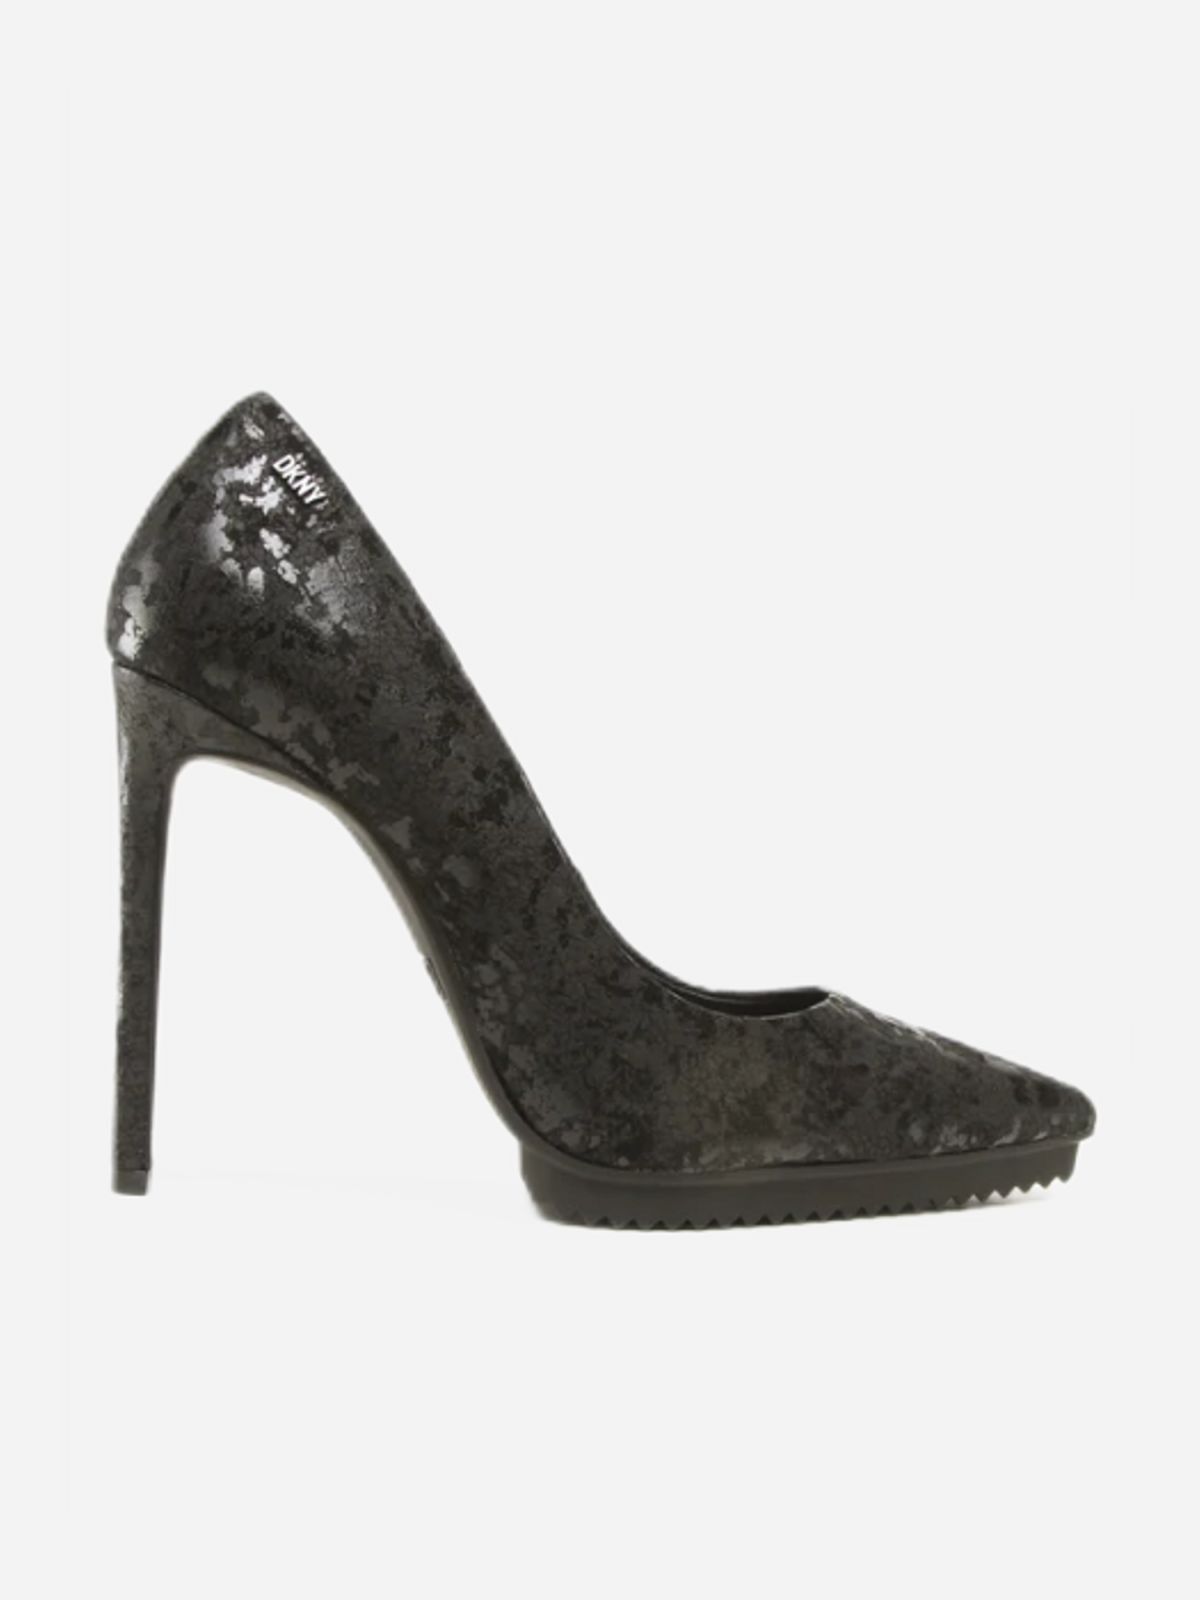  נעלי עקב בטקסטורה / נשים של DKNY